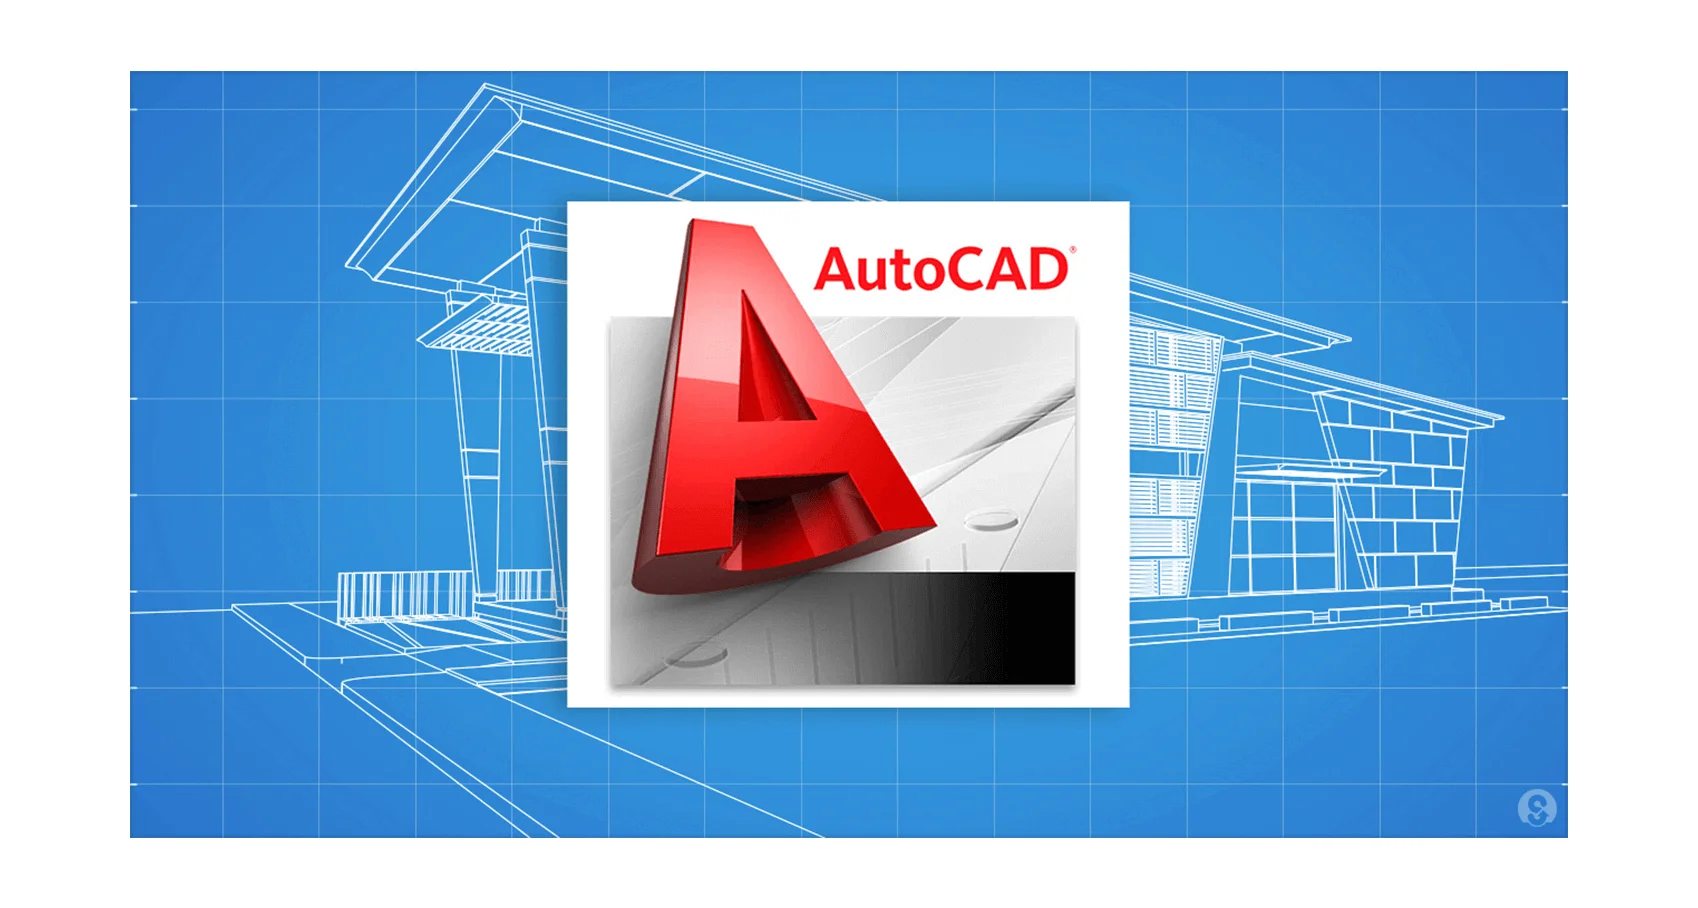 Phần mềm Auto CAD là lựa chọn tiện lợi để thiết kế bản vẽ dựa trên máy tính